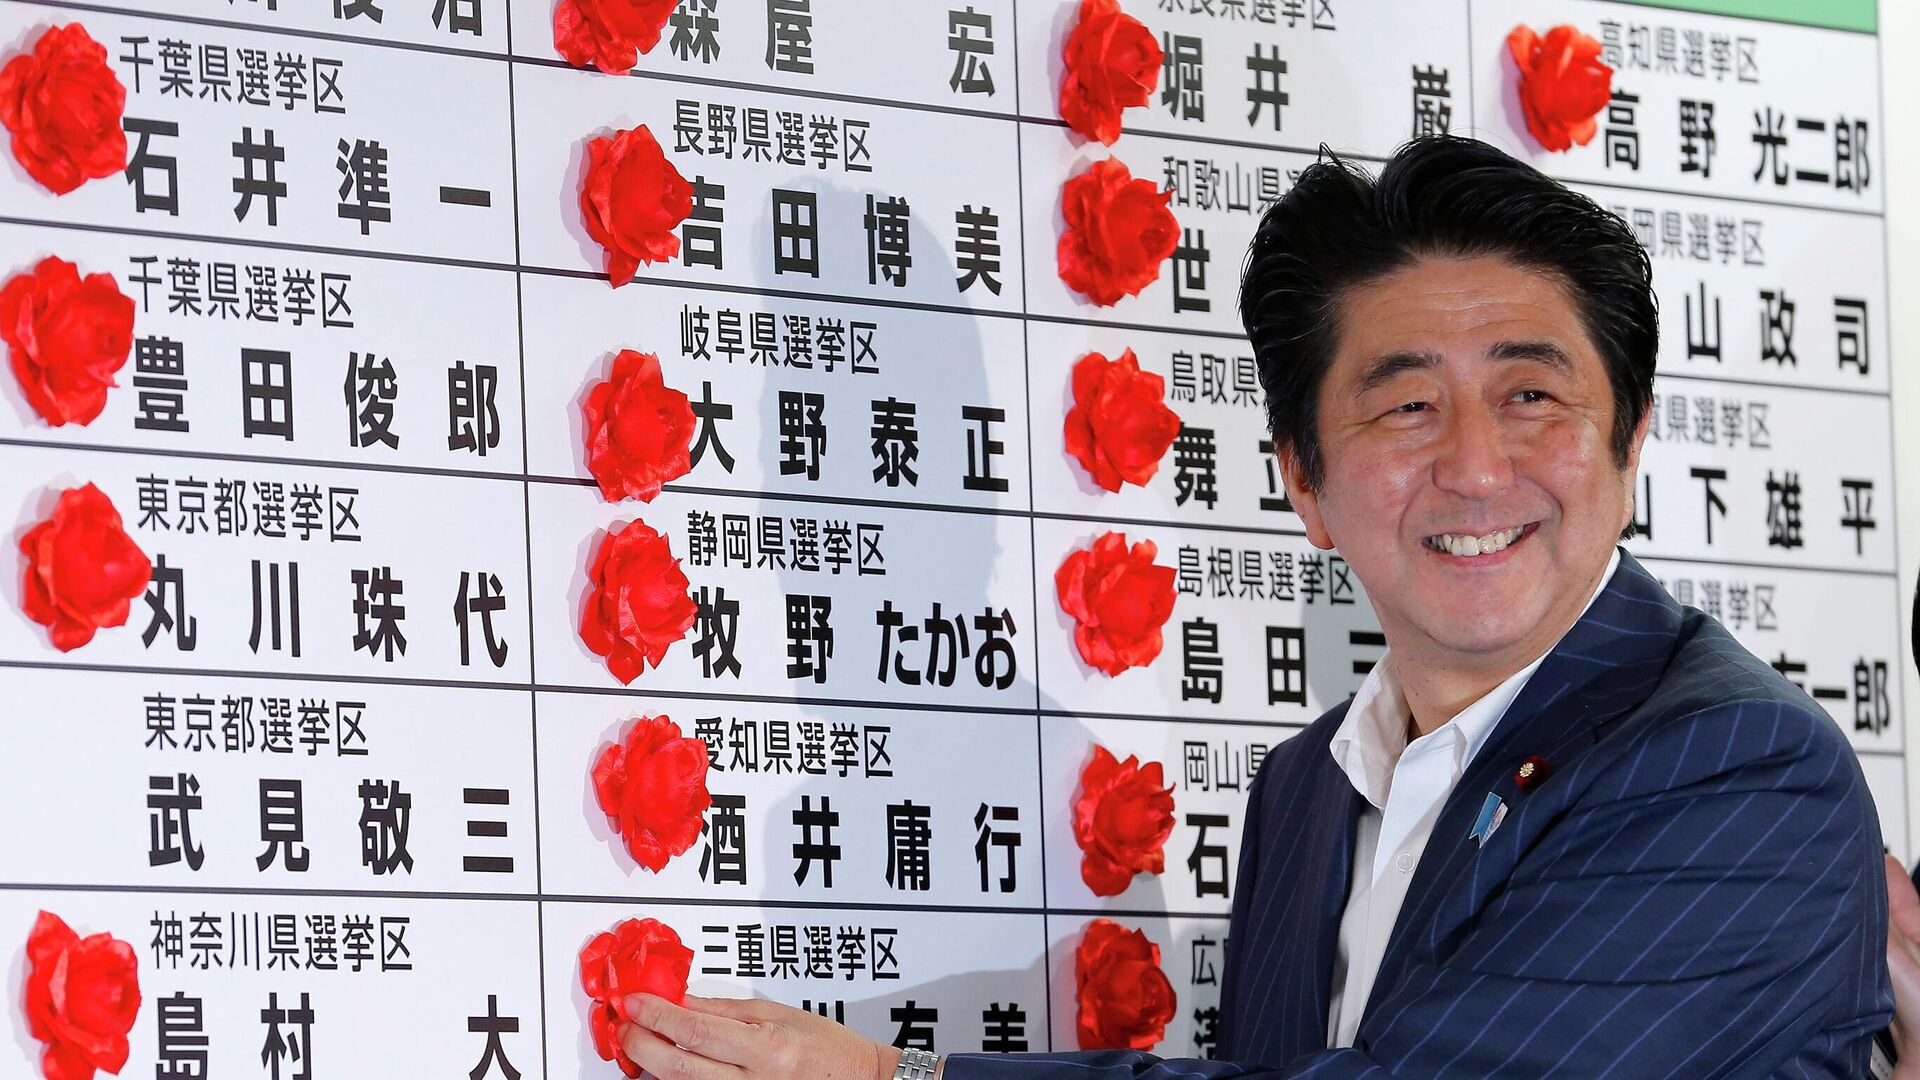 Премьер-министр Японии Синдзо Абэ ставит розетку на имя победившего кандидата от своей Либерально-демократической партии во время подсчета голосов на выборах в верхнюю палату парламента в штаб-квартире партии в Токио - Sputnik Таджикистан, 1920, 10.07.2022